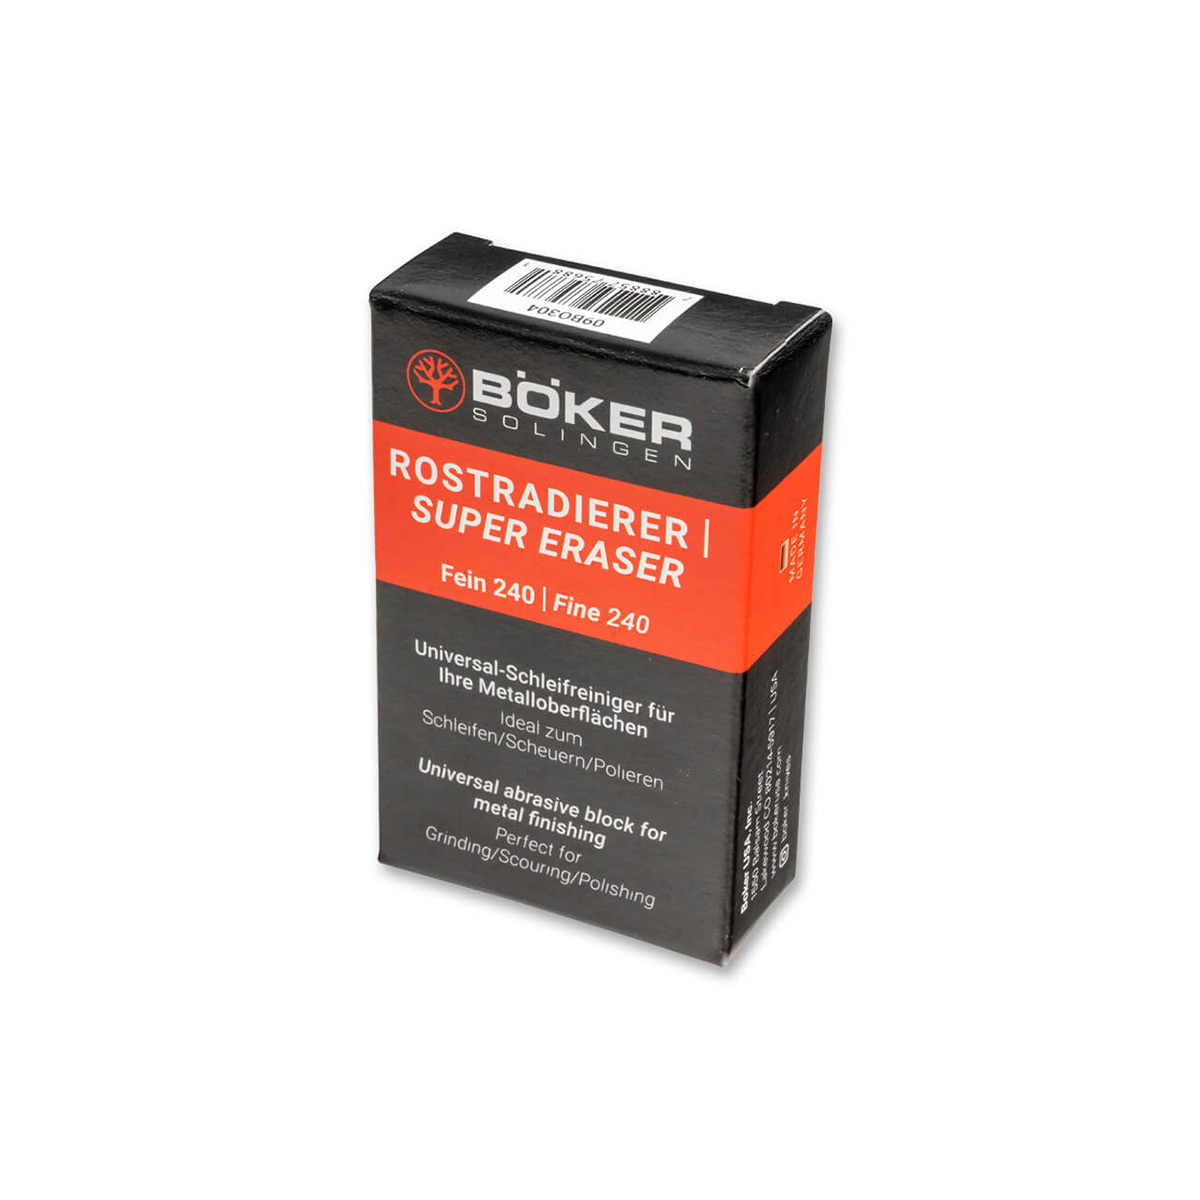 Губка для полировки Super Eraser, Boker